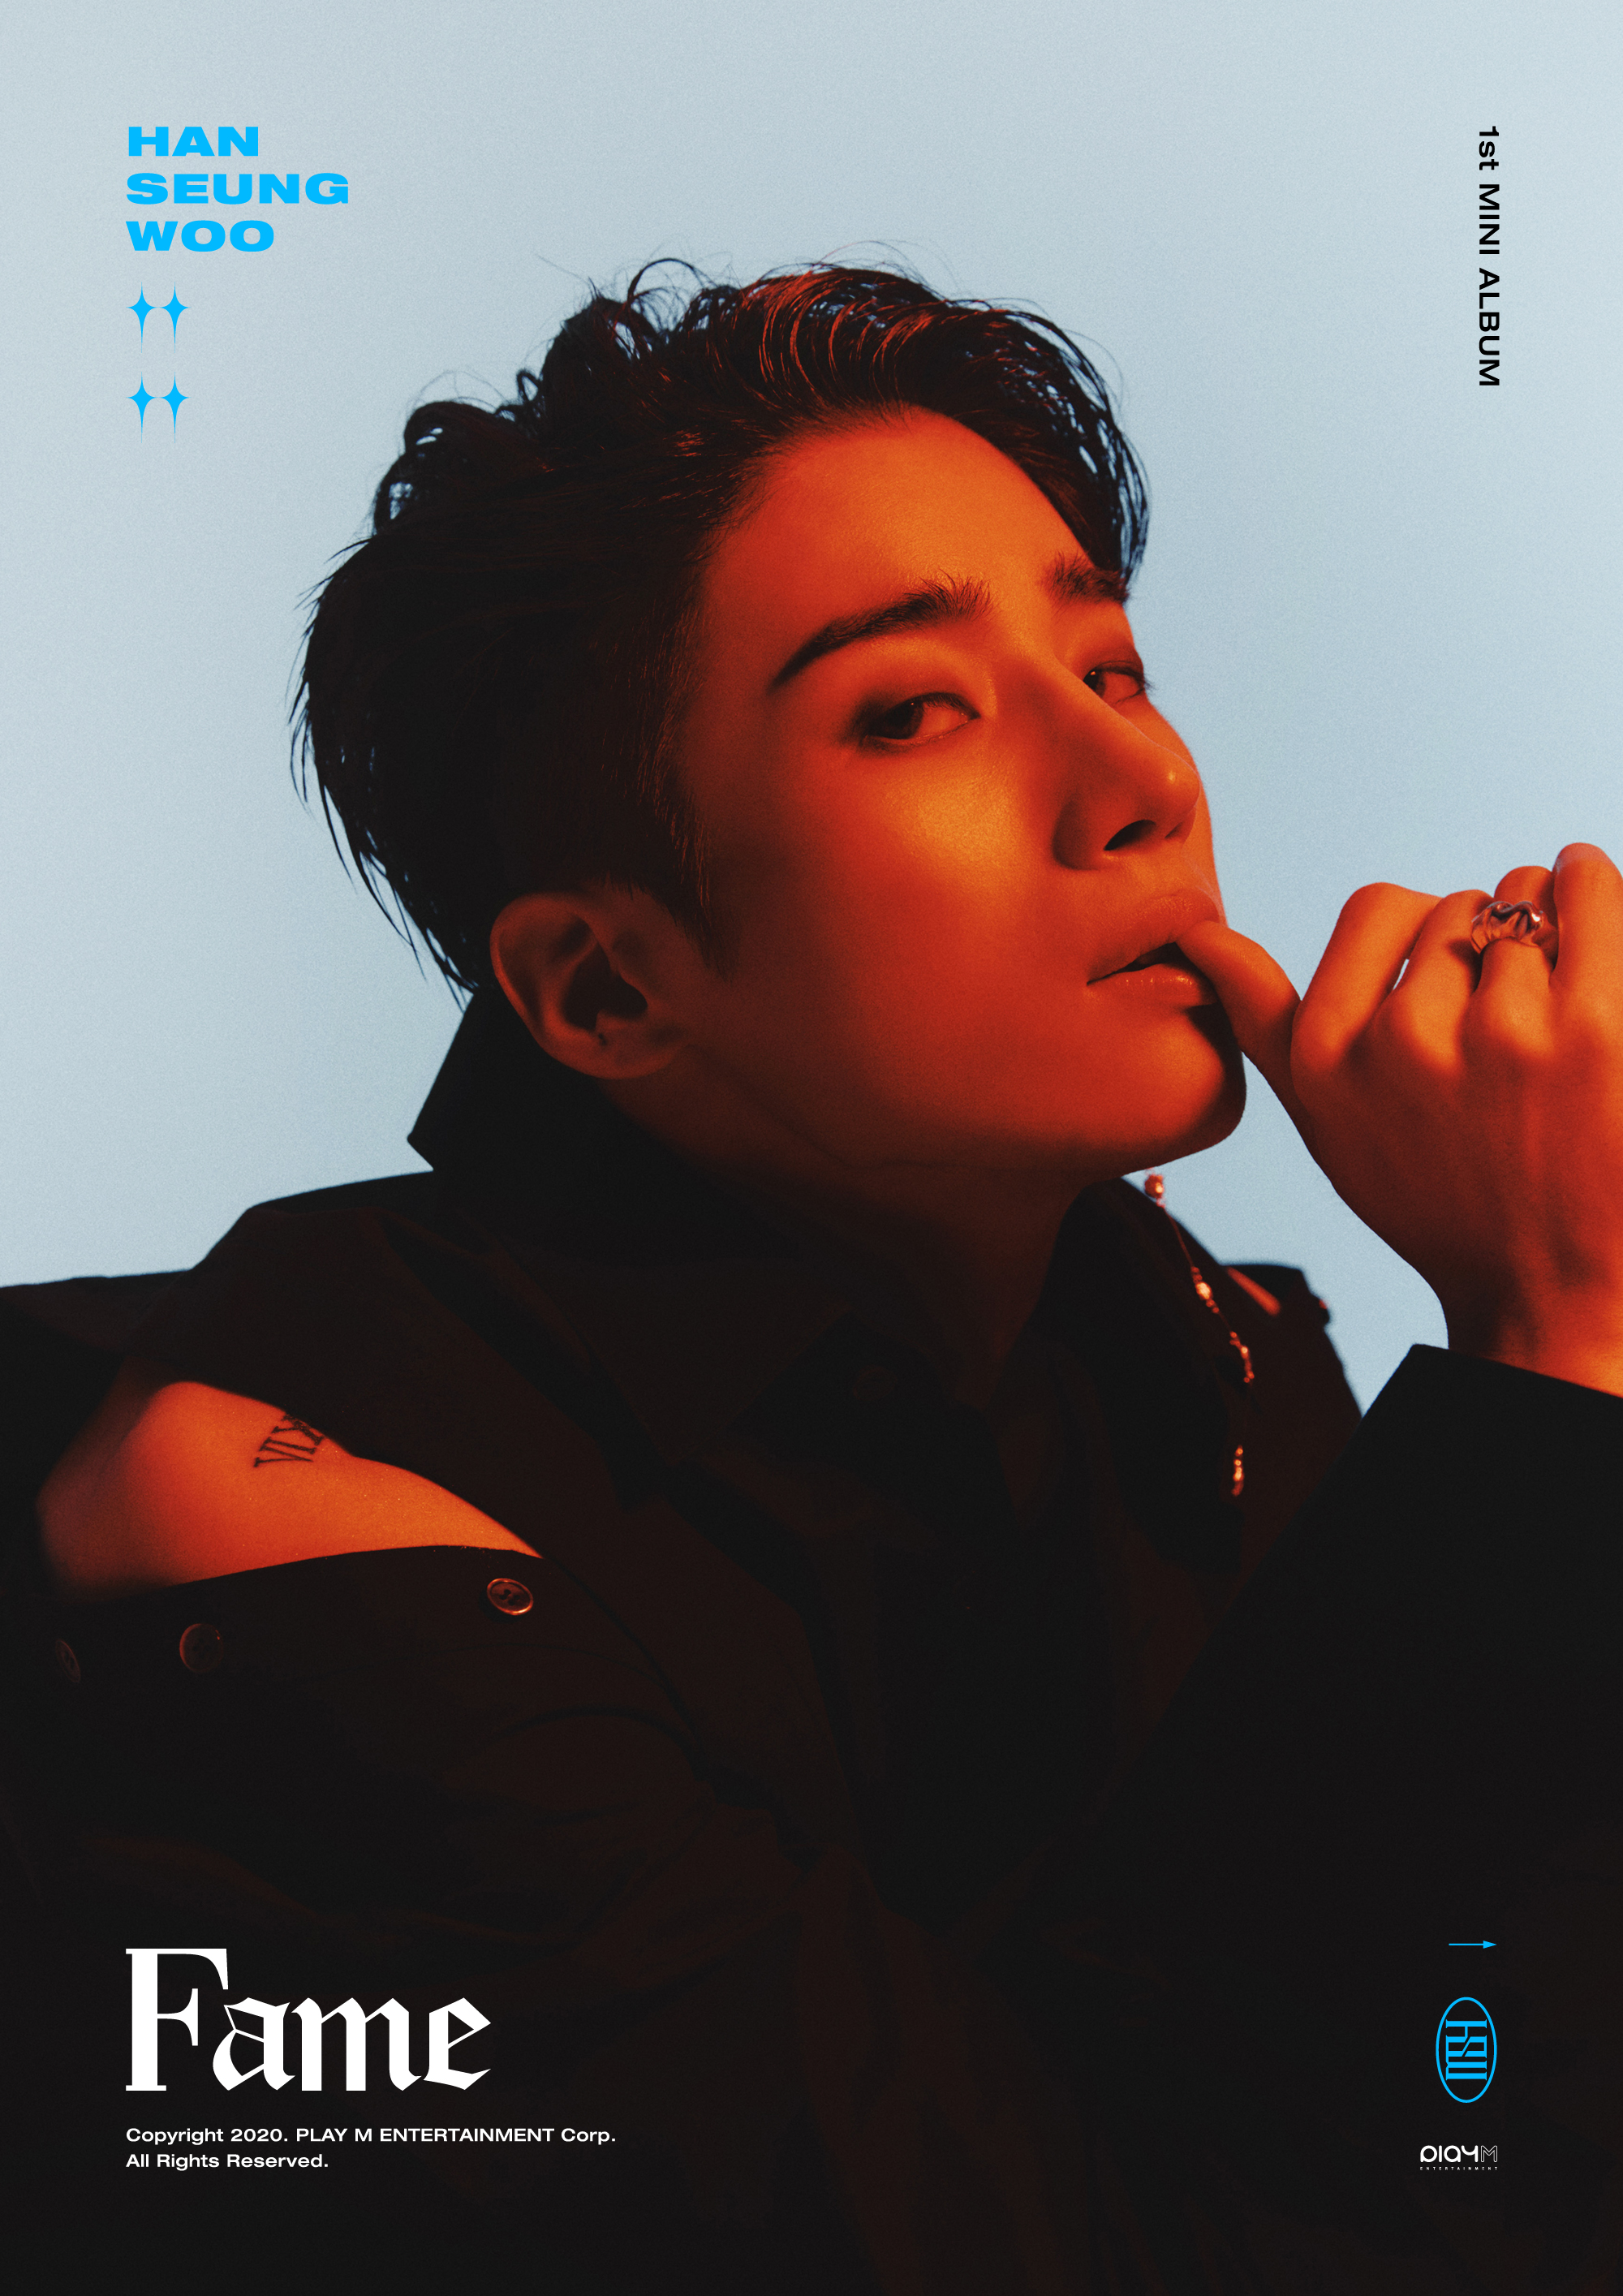 [정보/소식] HAN SEUNG WOO 1st Mini Album [Fame] IMAGE TEASER #WOO  | 인스티즈